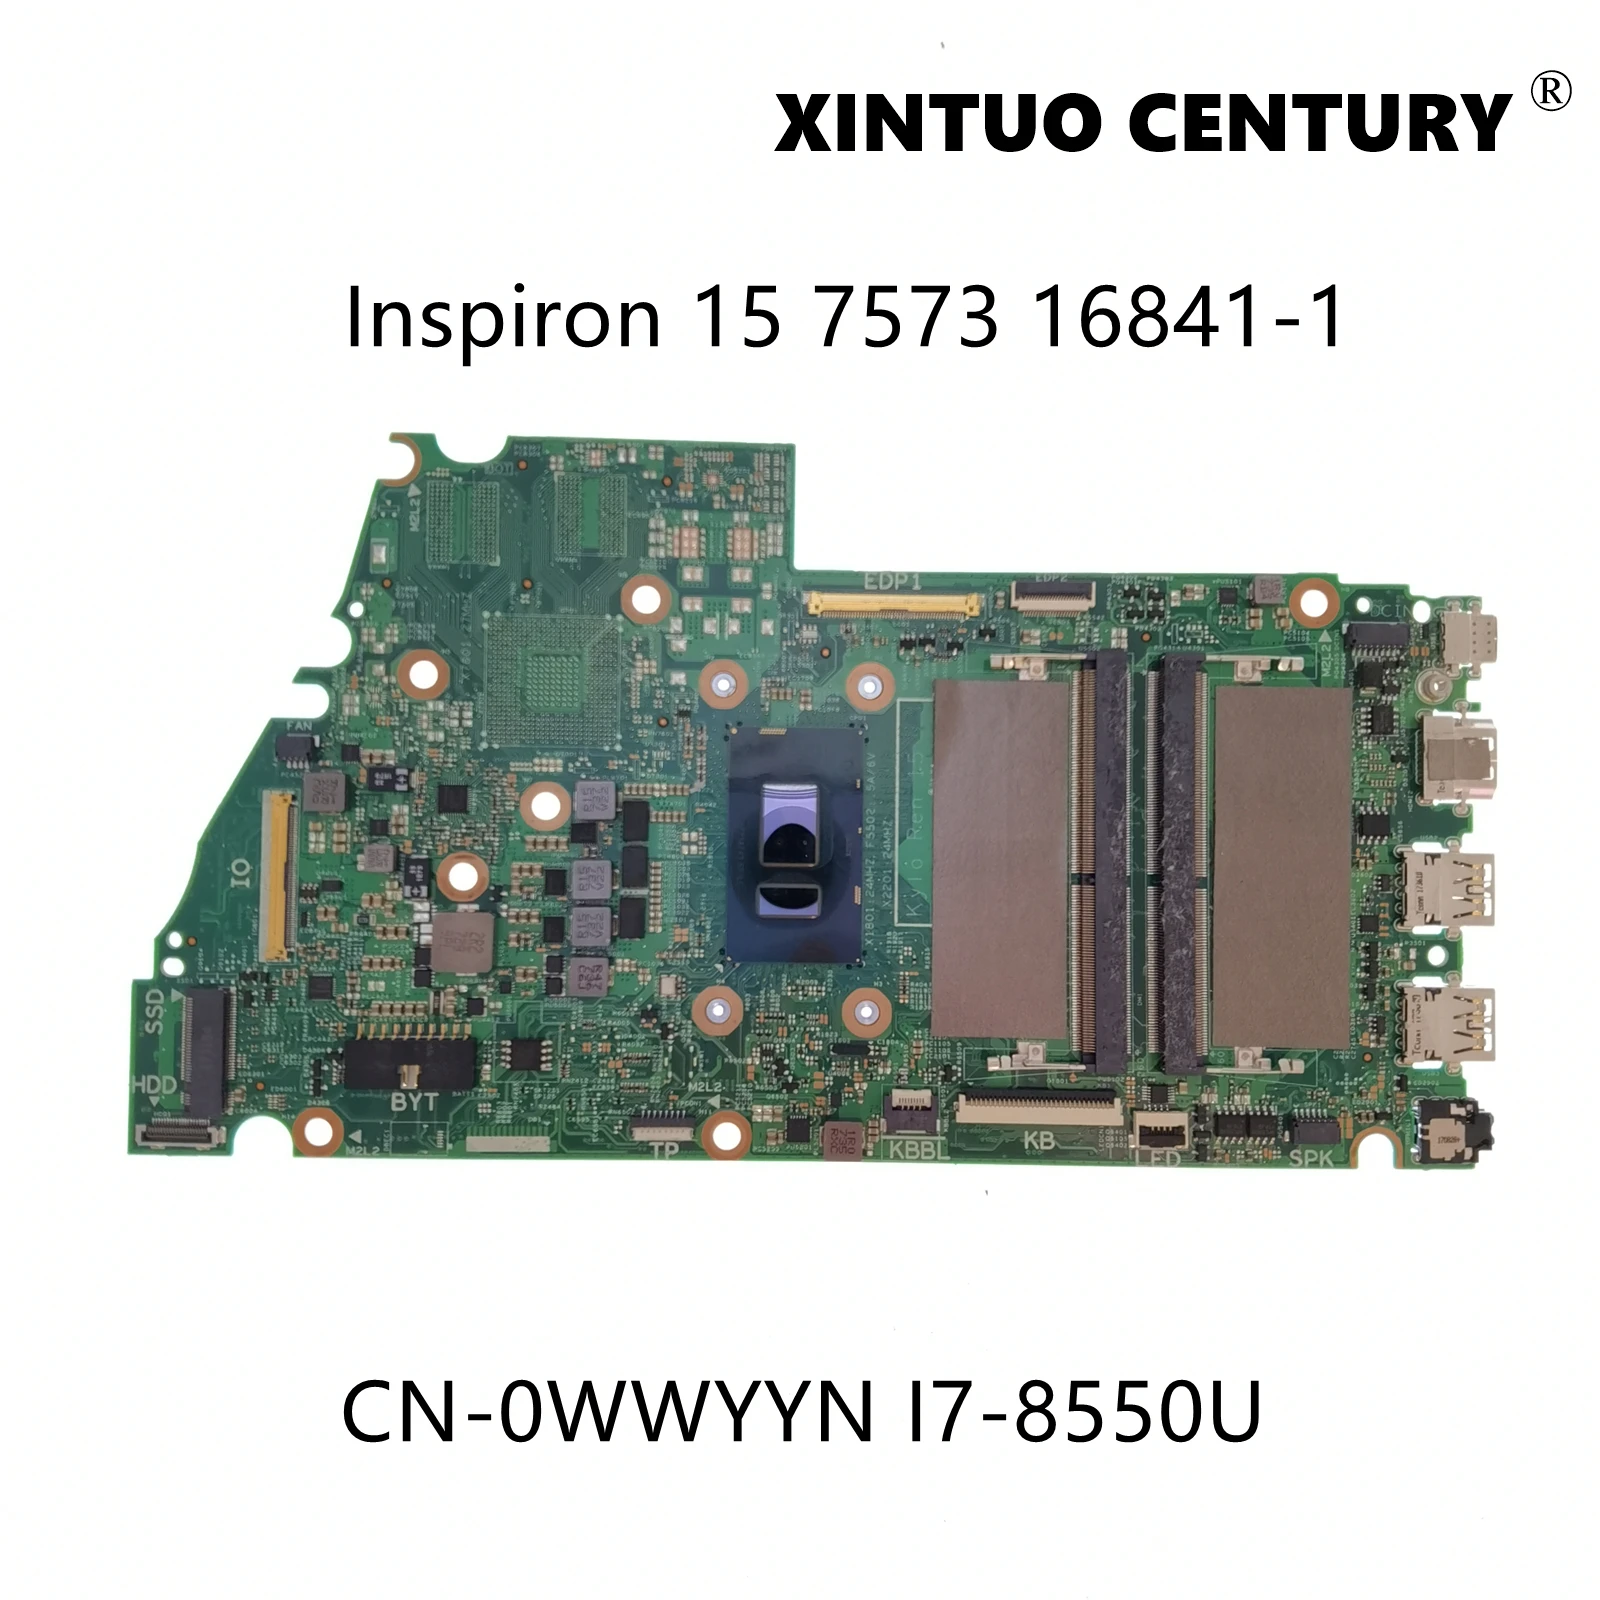 

CN-0WWYYN 0WWYYN WWYYN For Dell Inspiron 15 7573 Laptop Motherboard 16841-1 With i7-8550U CPU 100% Tested Working